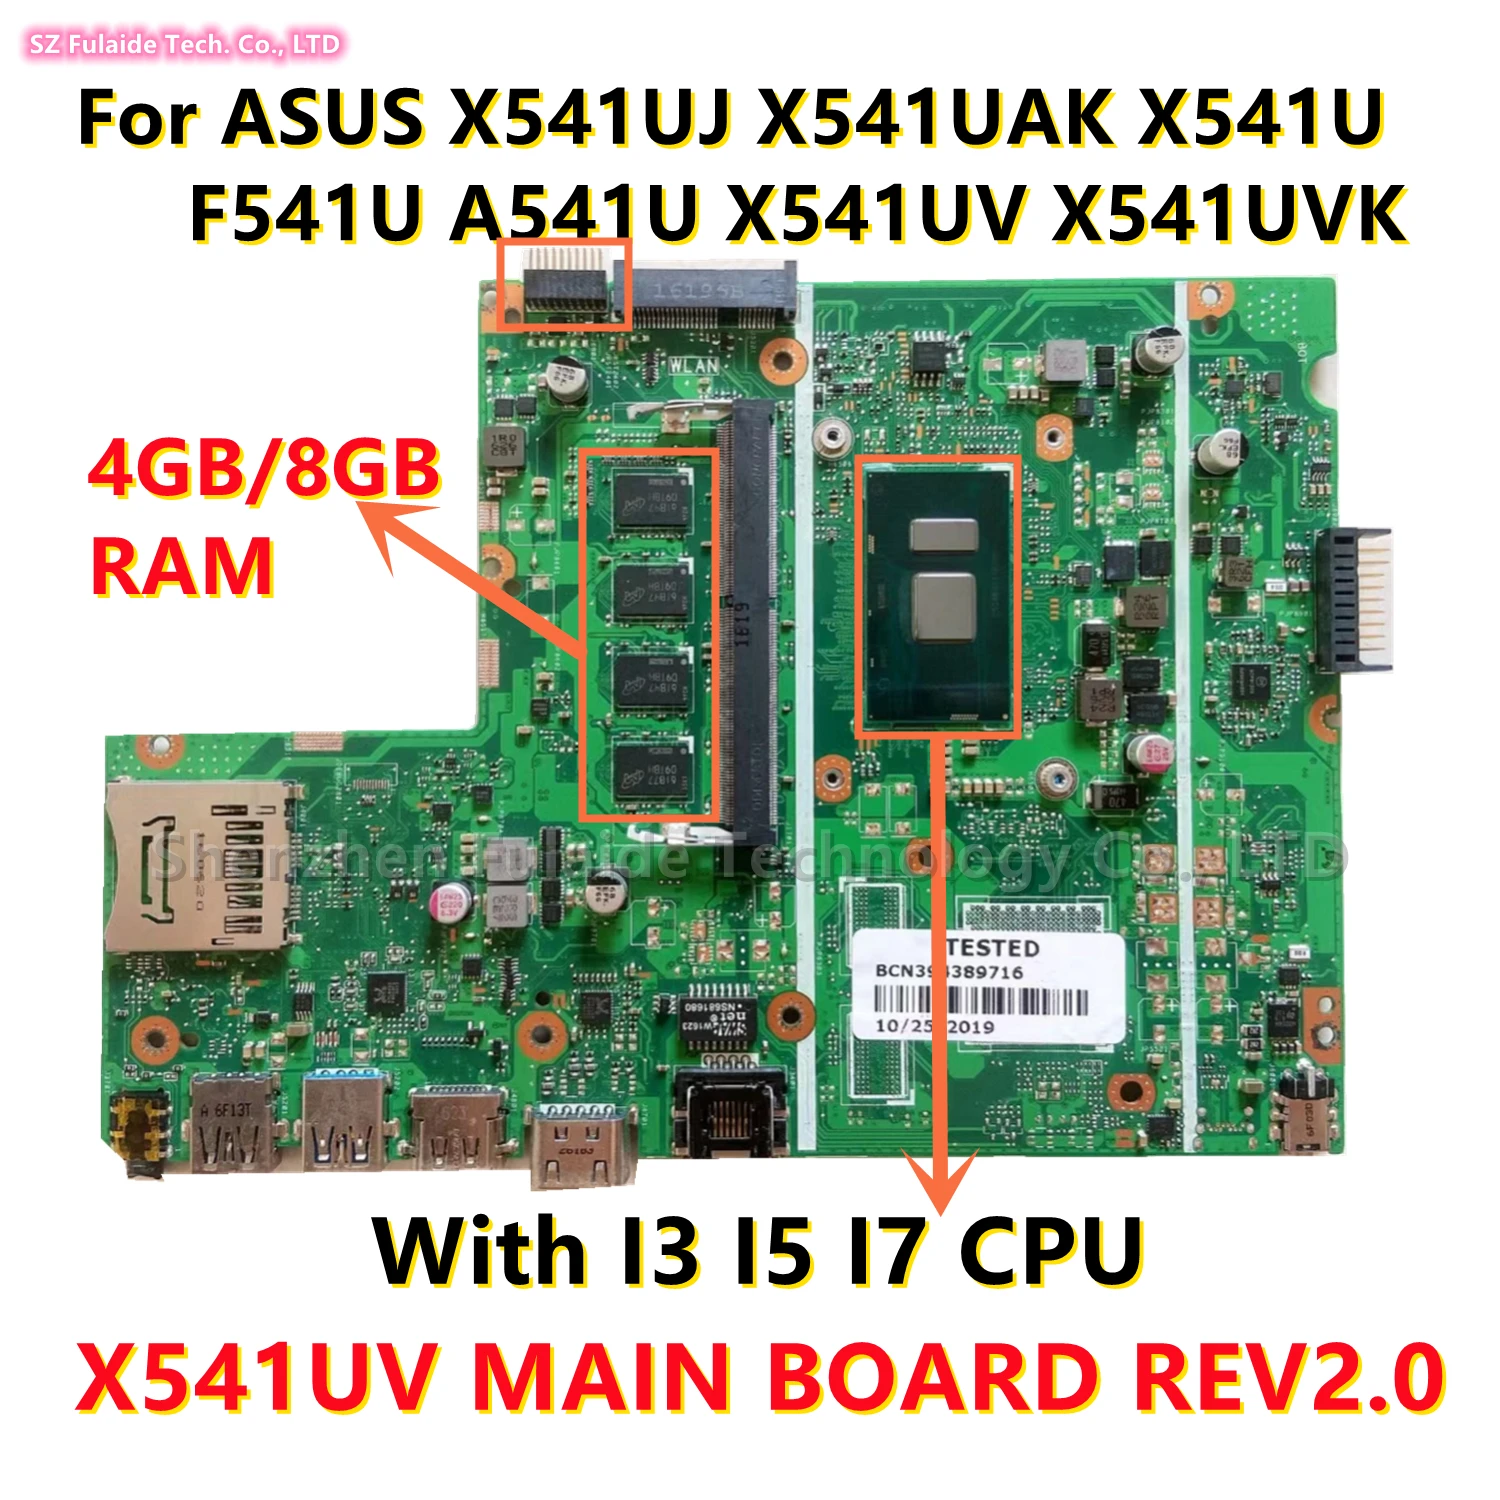   X541UV REV2.0  ASUS X541UJ X541UAK X541U F541U A541U X541UV X541UVK,       I3 I5 I7, 4/8  